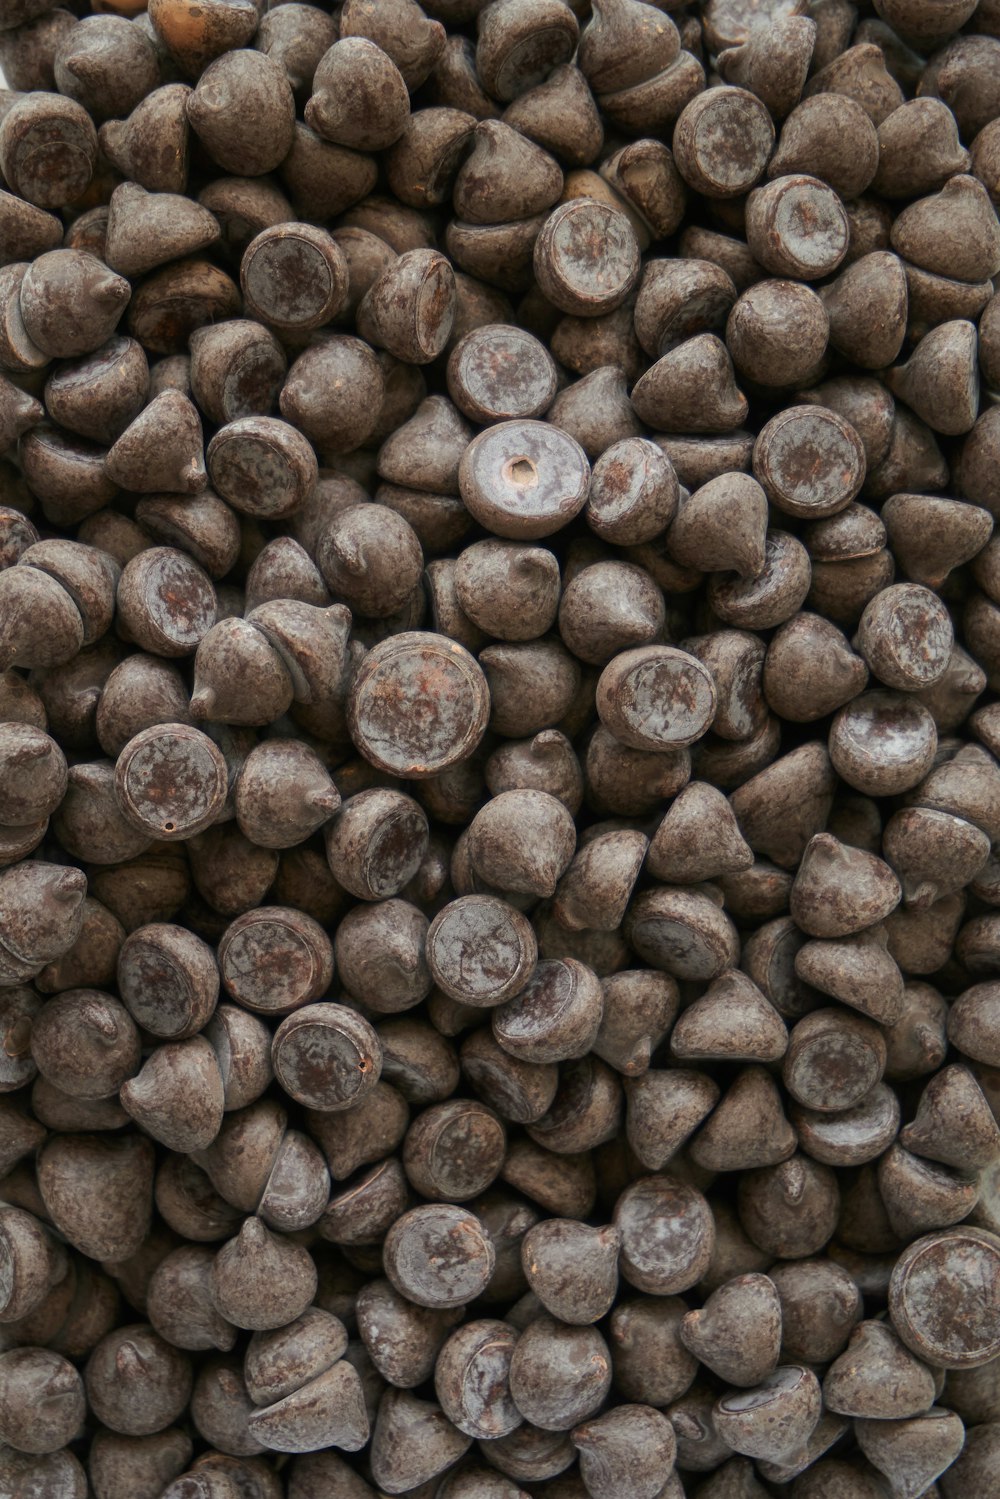 granos de café marrón sobre una superficie de madera marrón